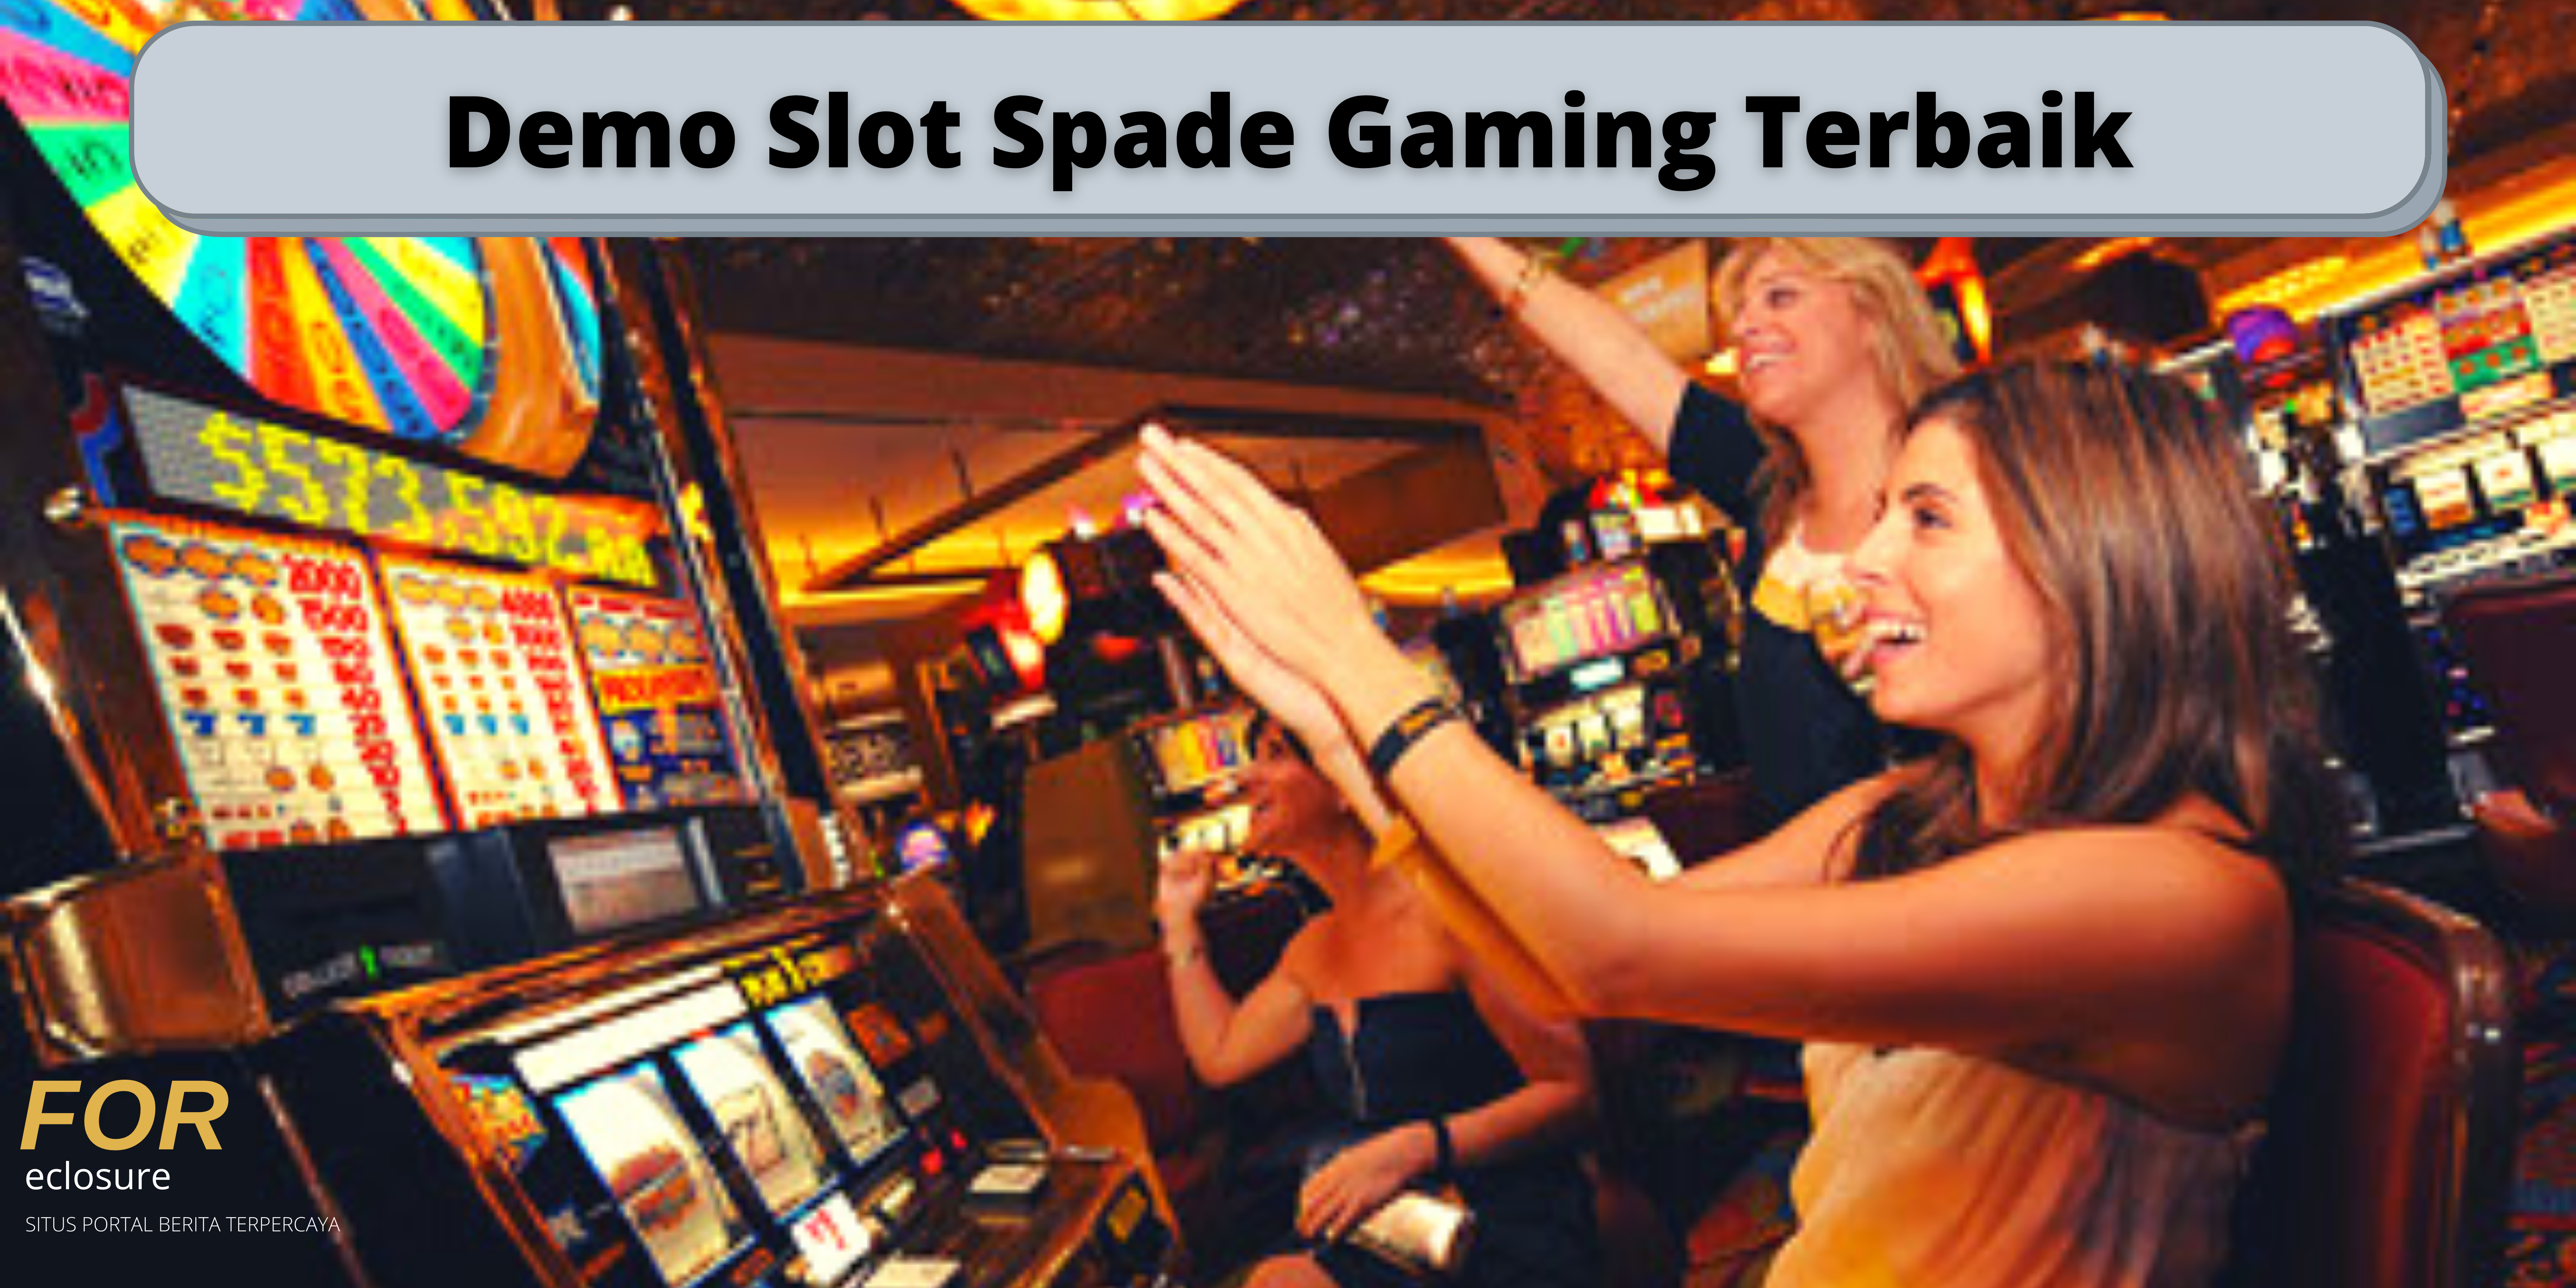 Demo Slot Spade Gaming Terbaik